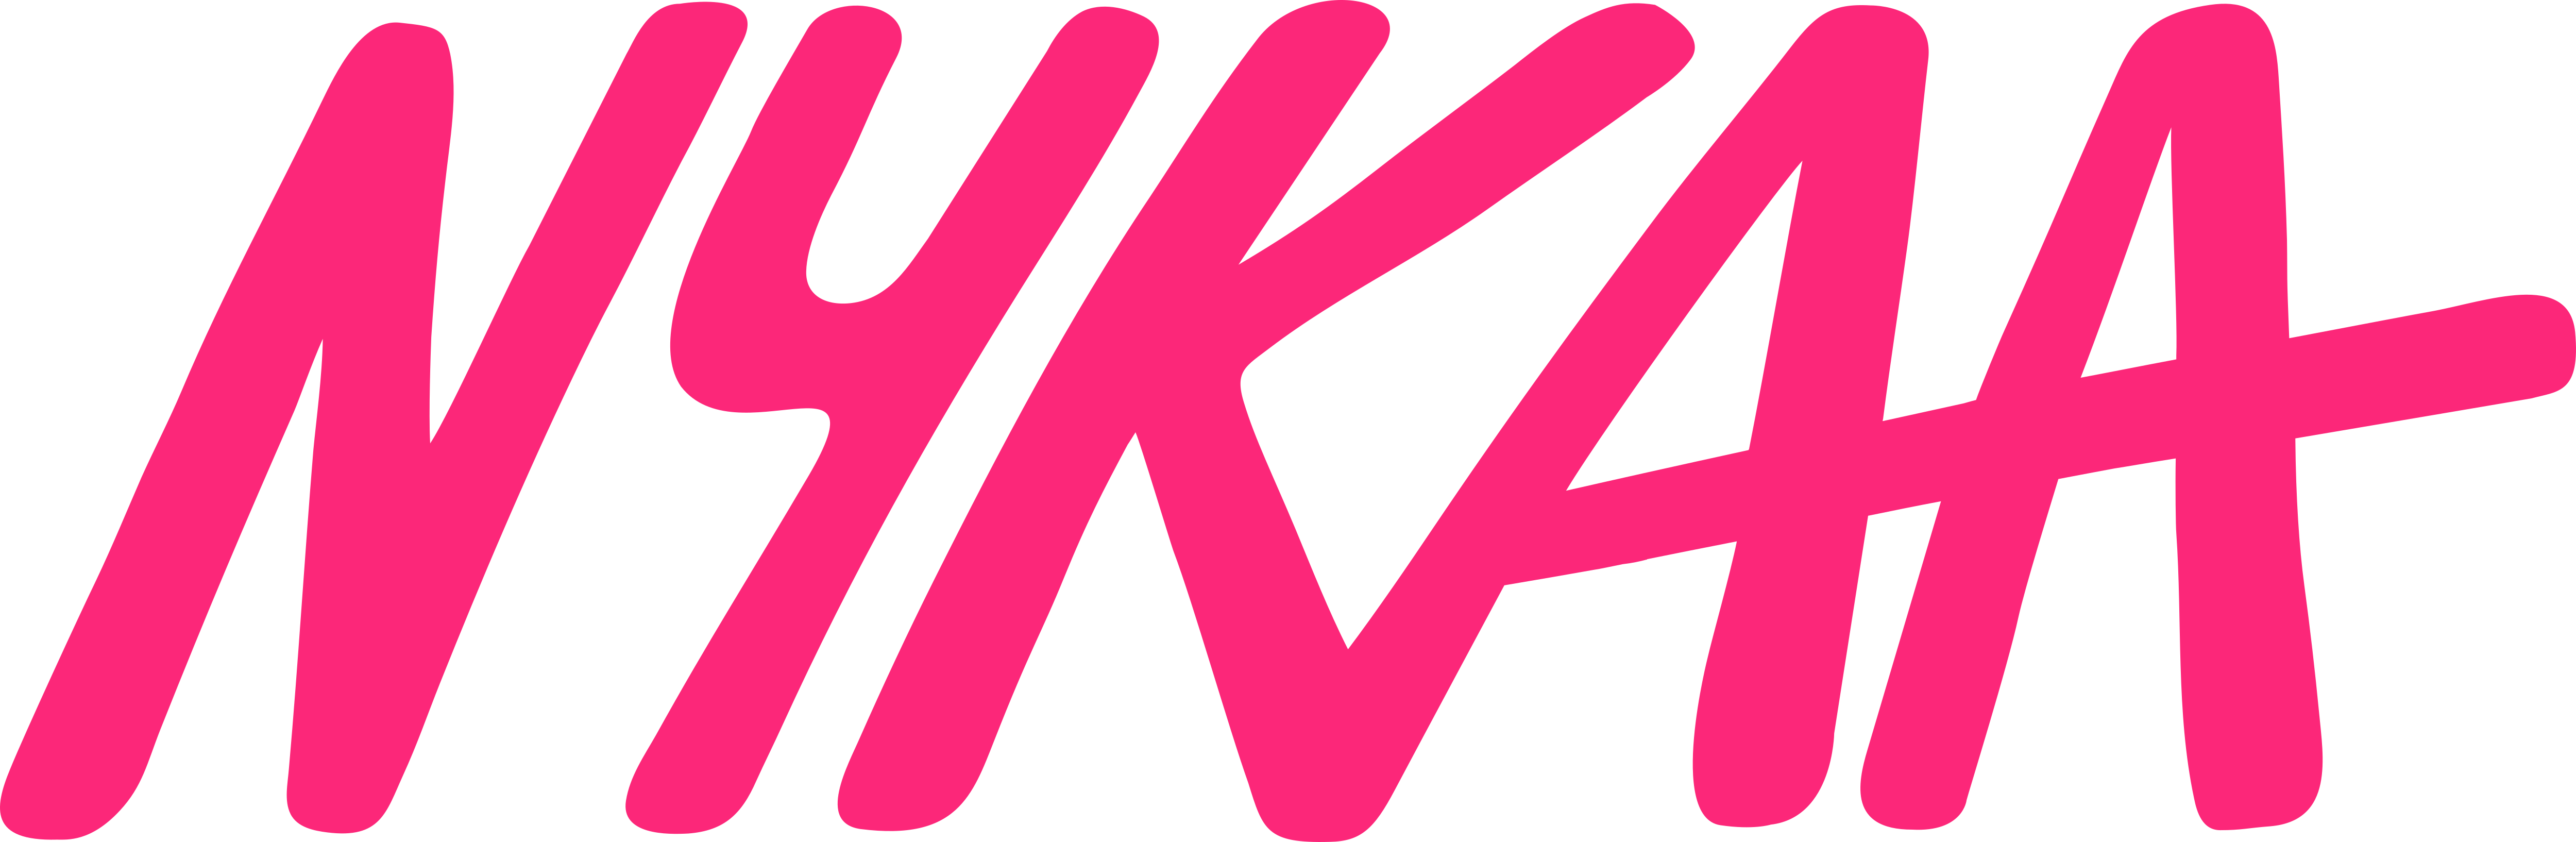 Share 130+ nykaa logo